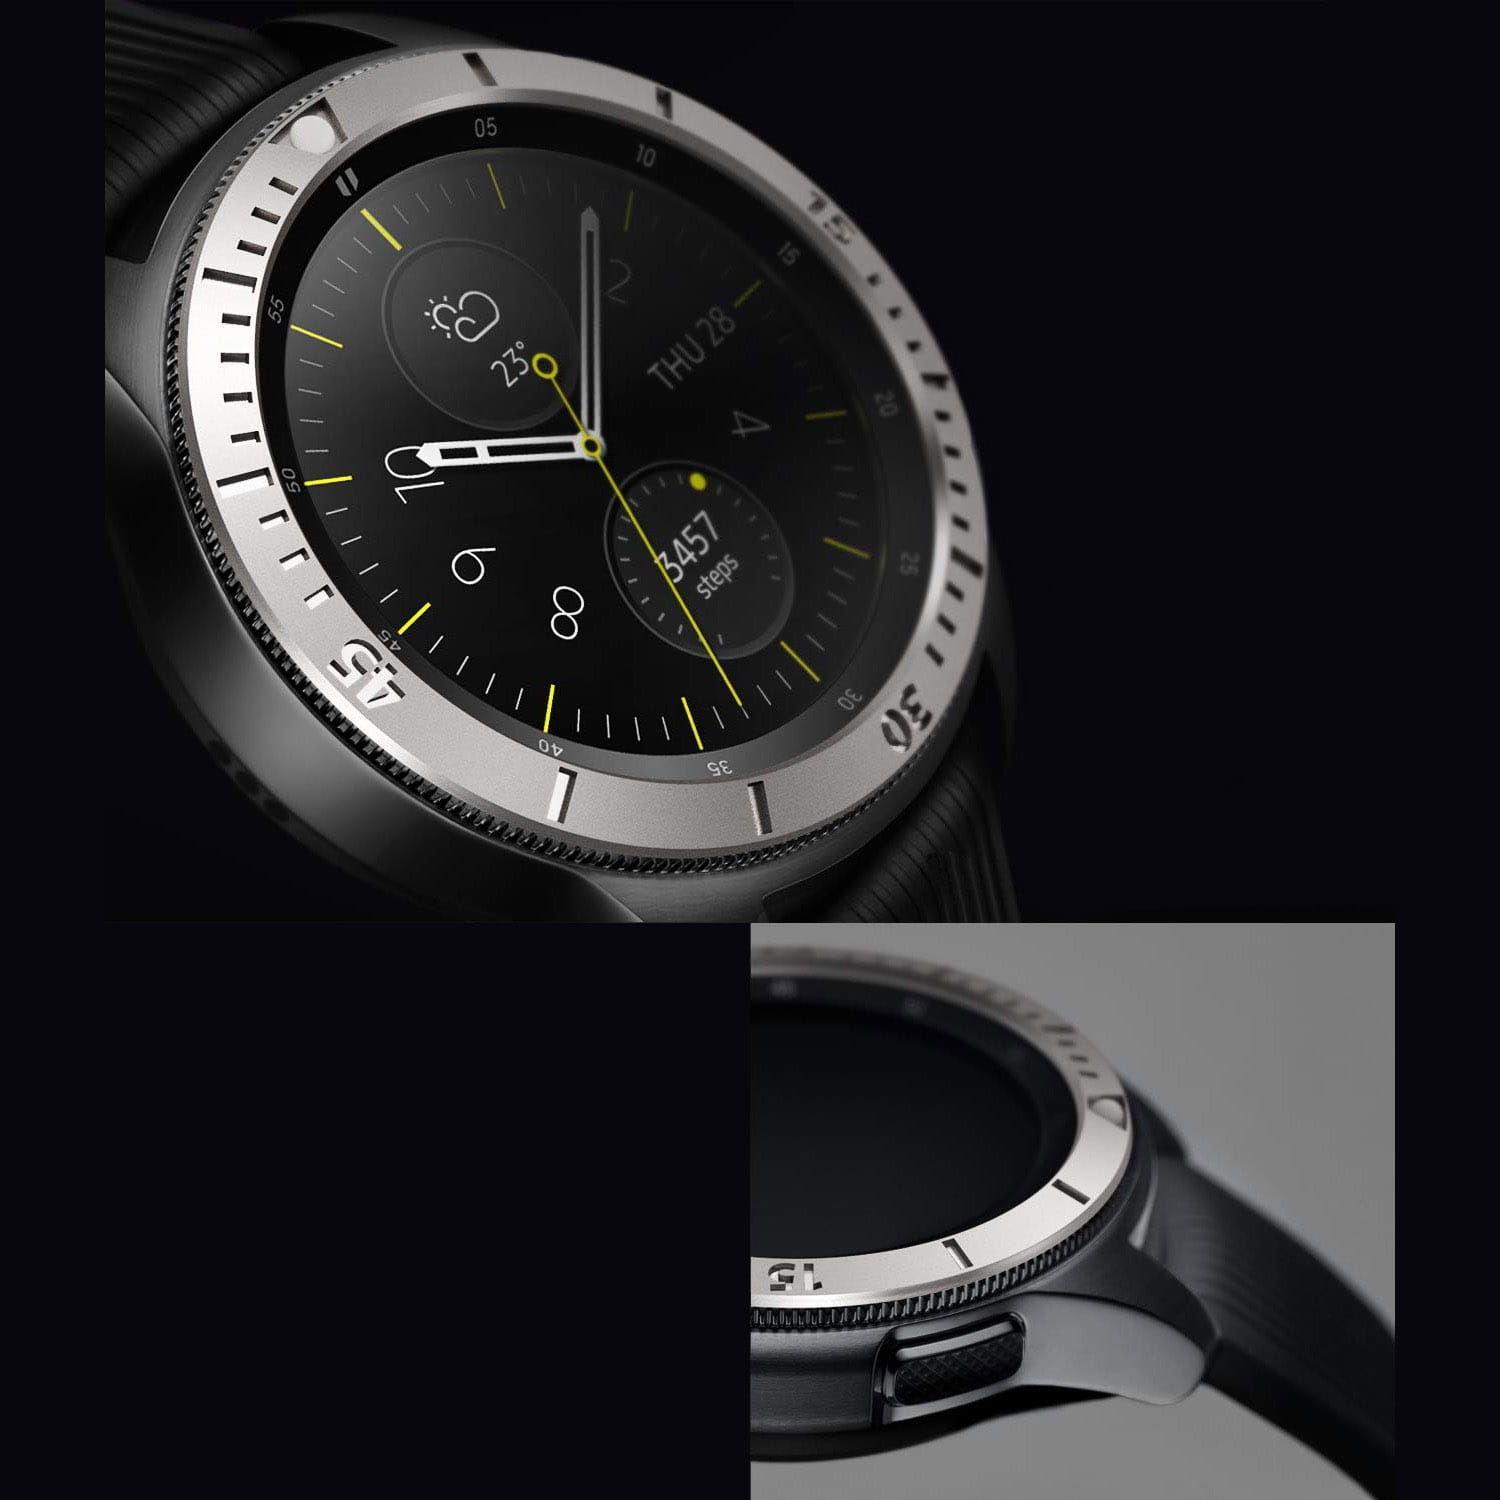 Originaler Rahmen Ringke aus der Bezel Styling Stainless Steel Serie für Galaxy Watch 42mm, silbern.